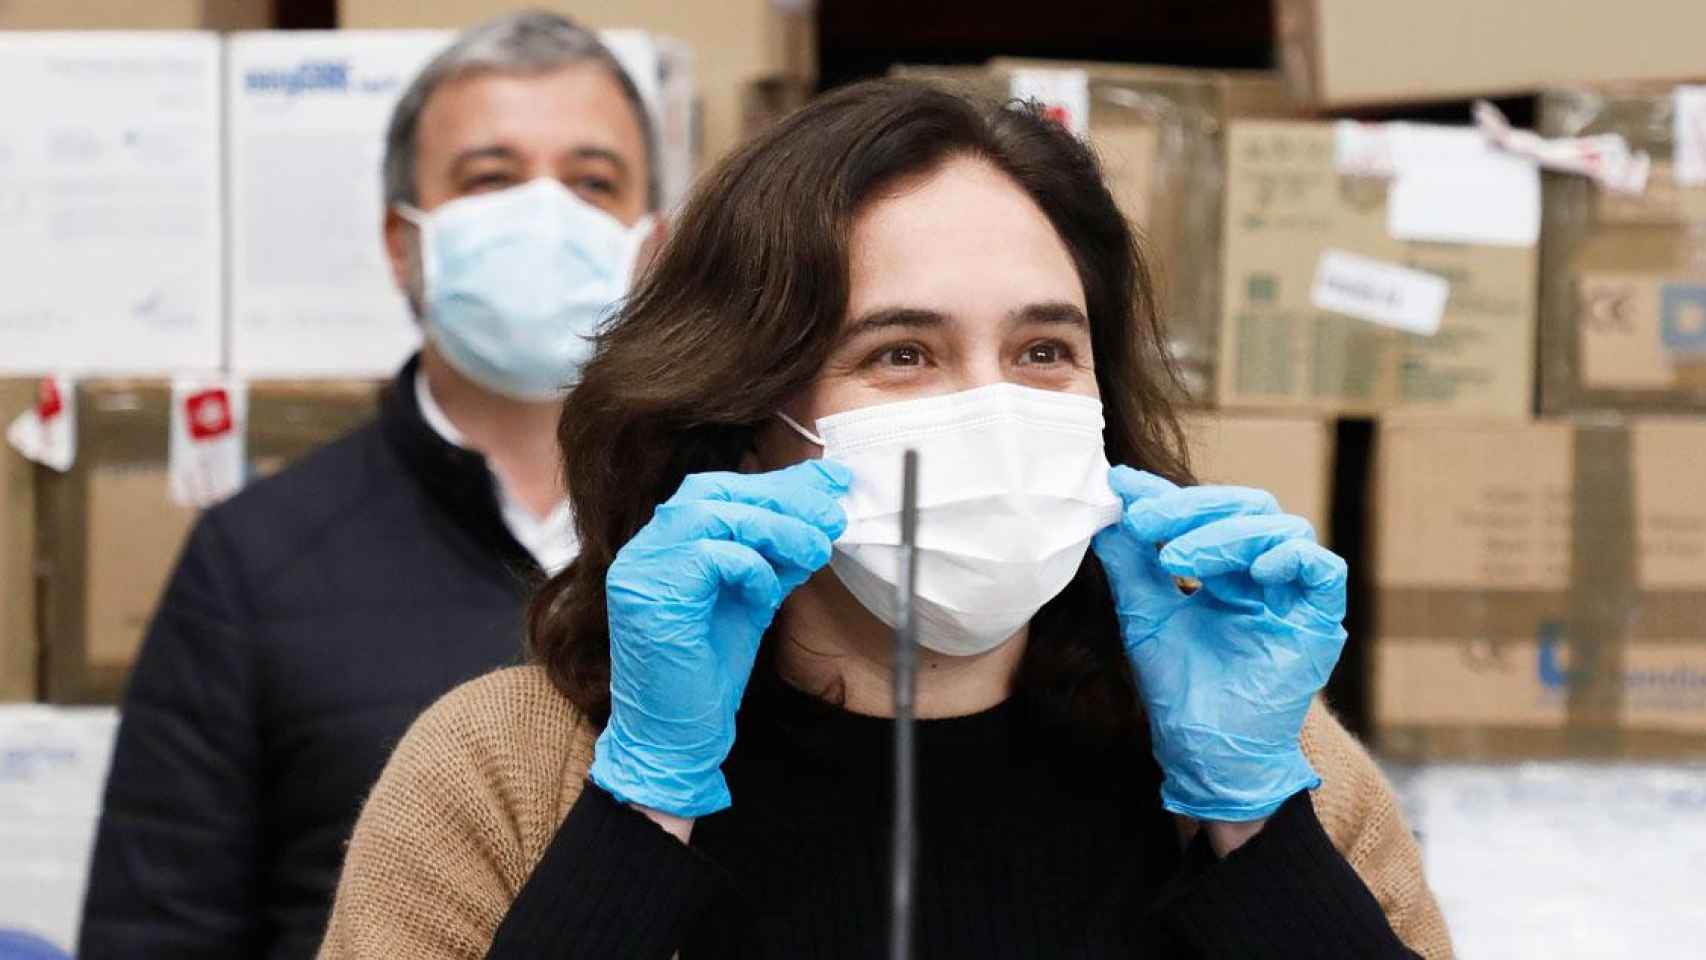 La alcaldesa de Barcelona, Ada Colau, con una mascarilla quirúrgica y guantes / EFE